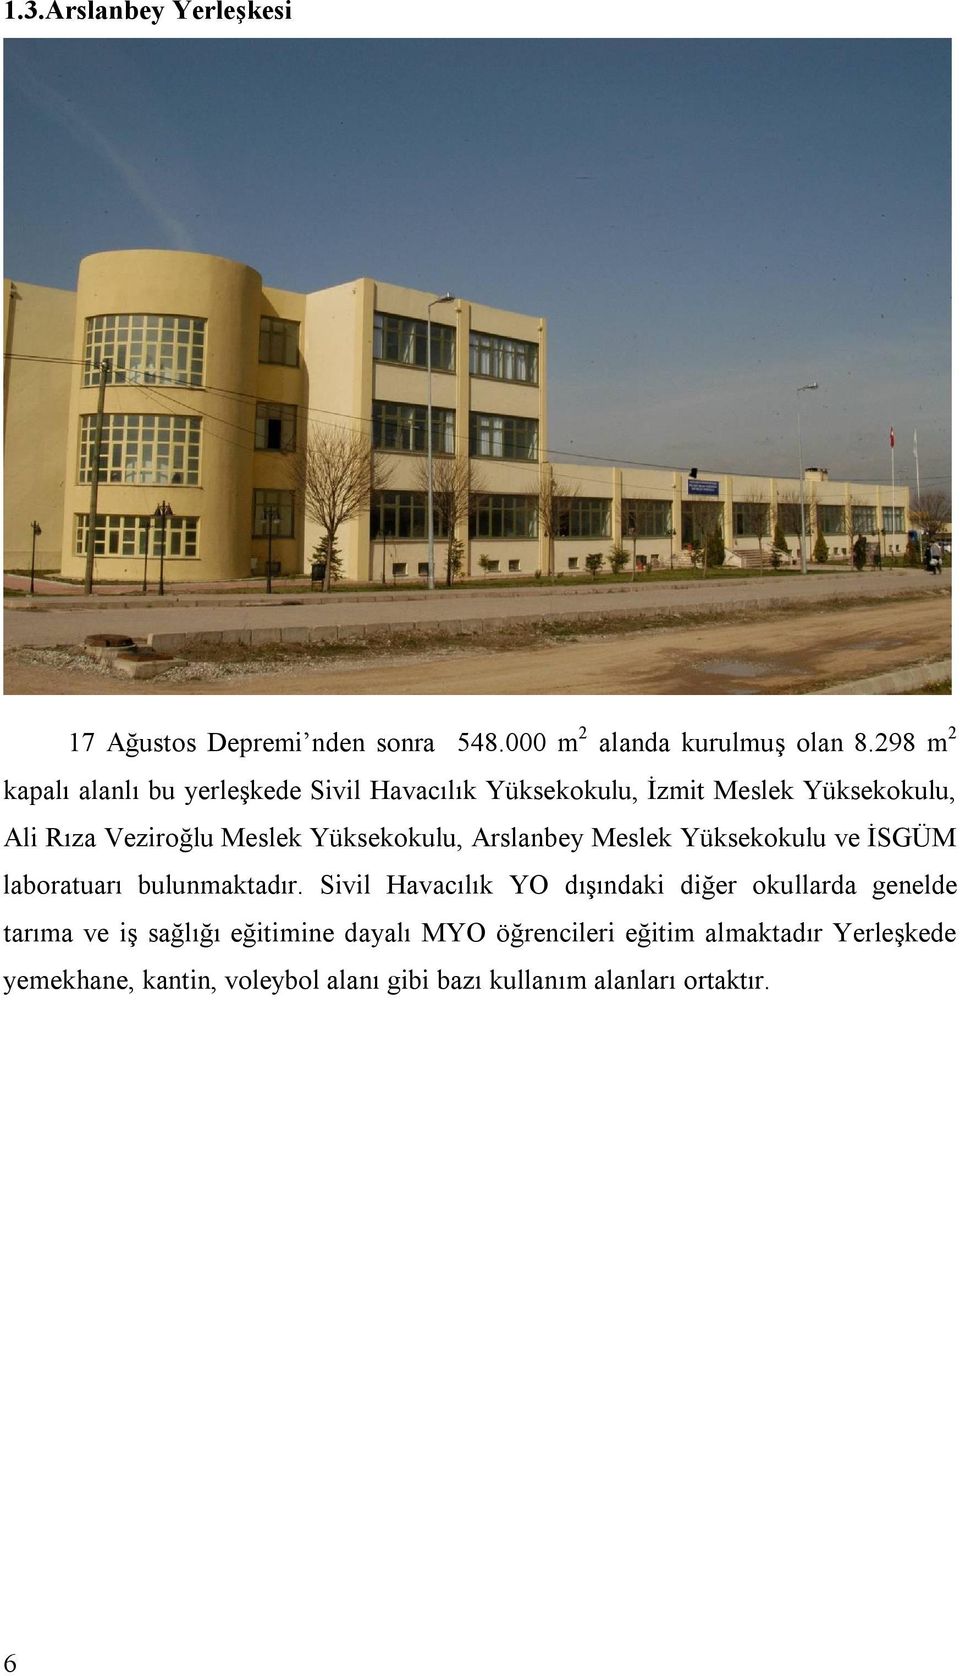 Yüksekokulu, Arslanbey Meslek Yüksekokulu ve İSGÜM laboratuarı bulunmaktadır.